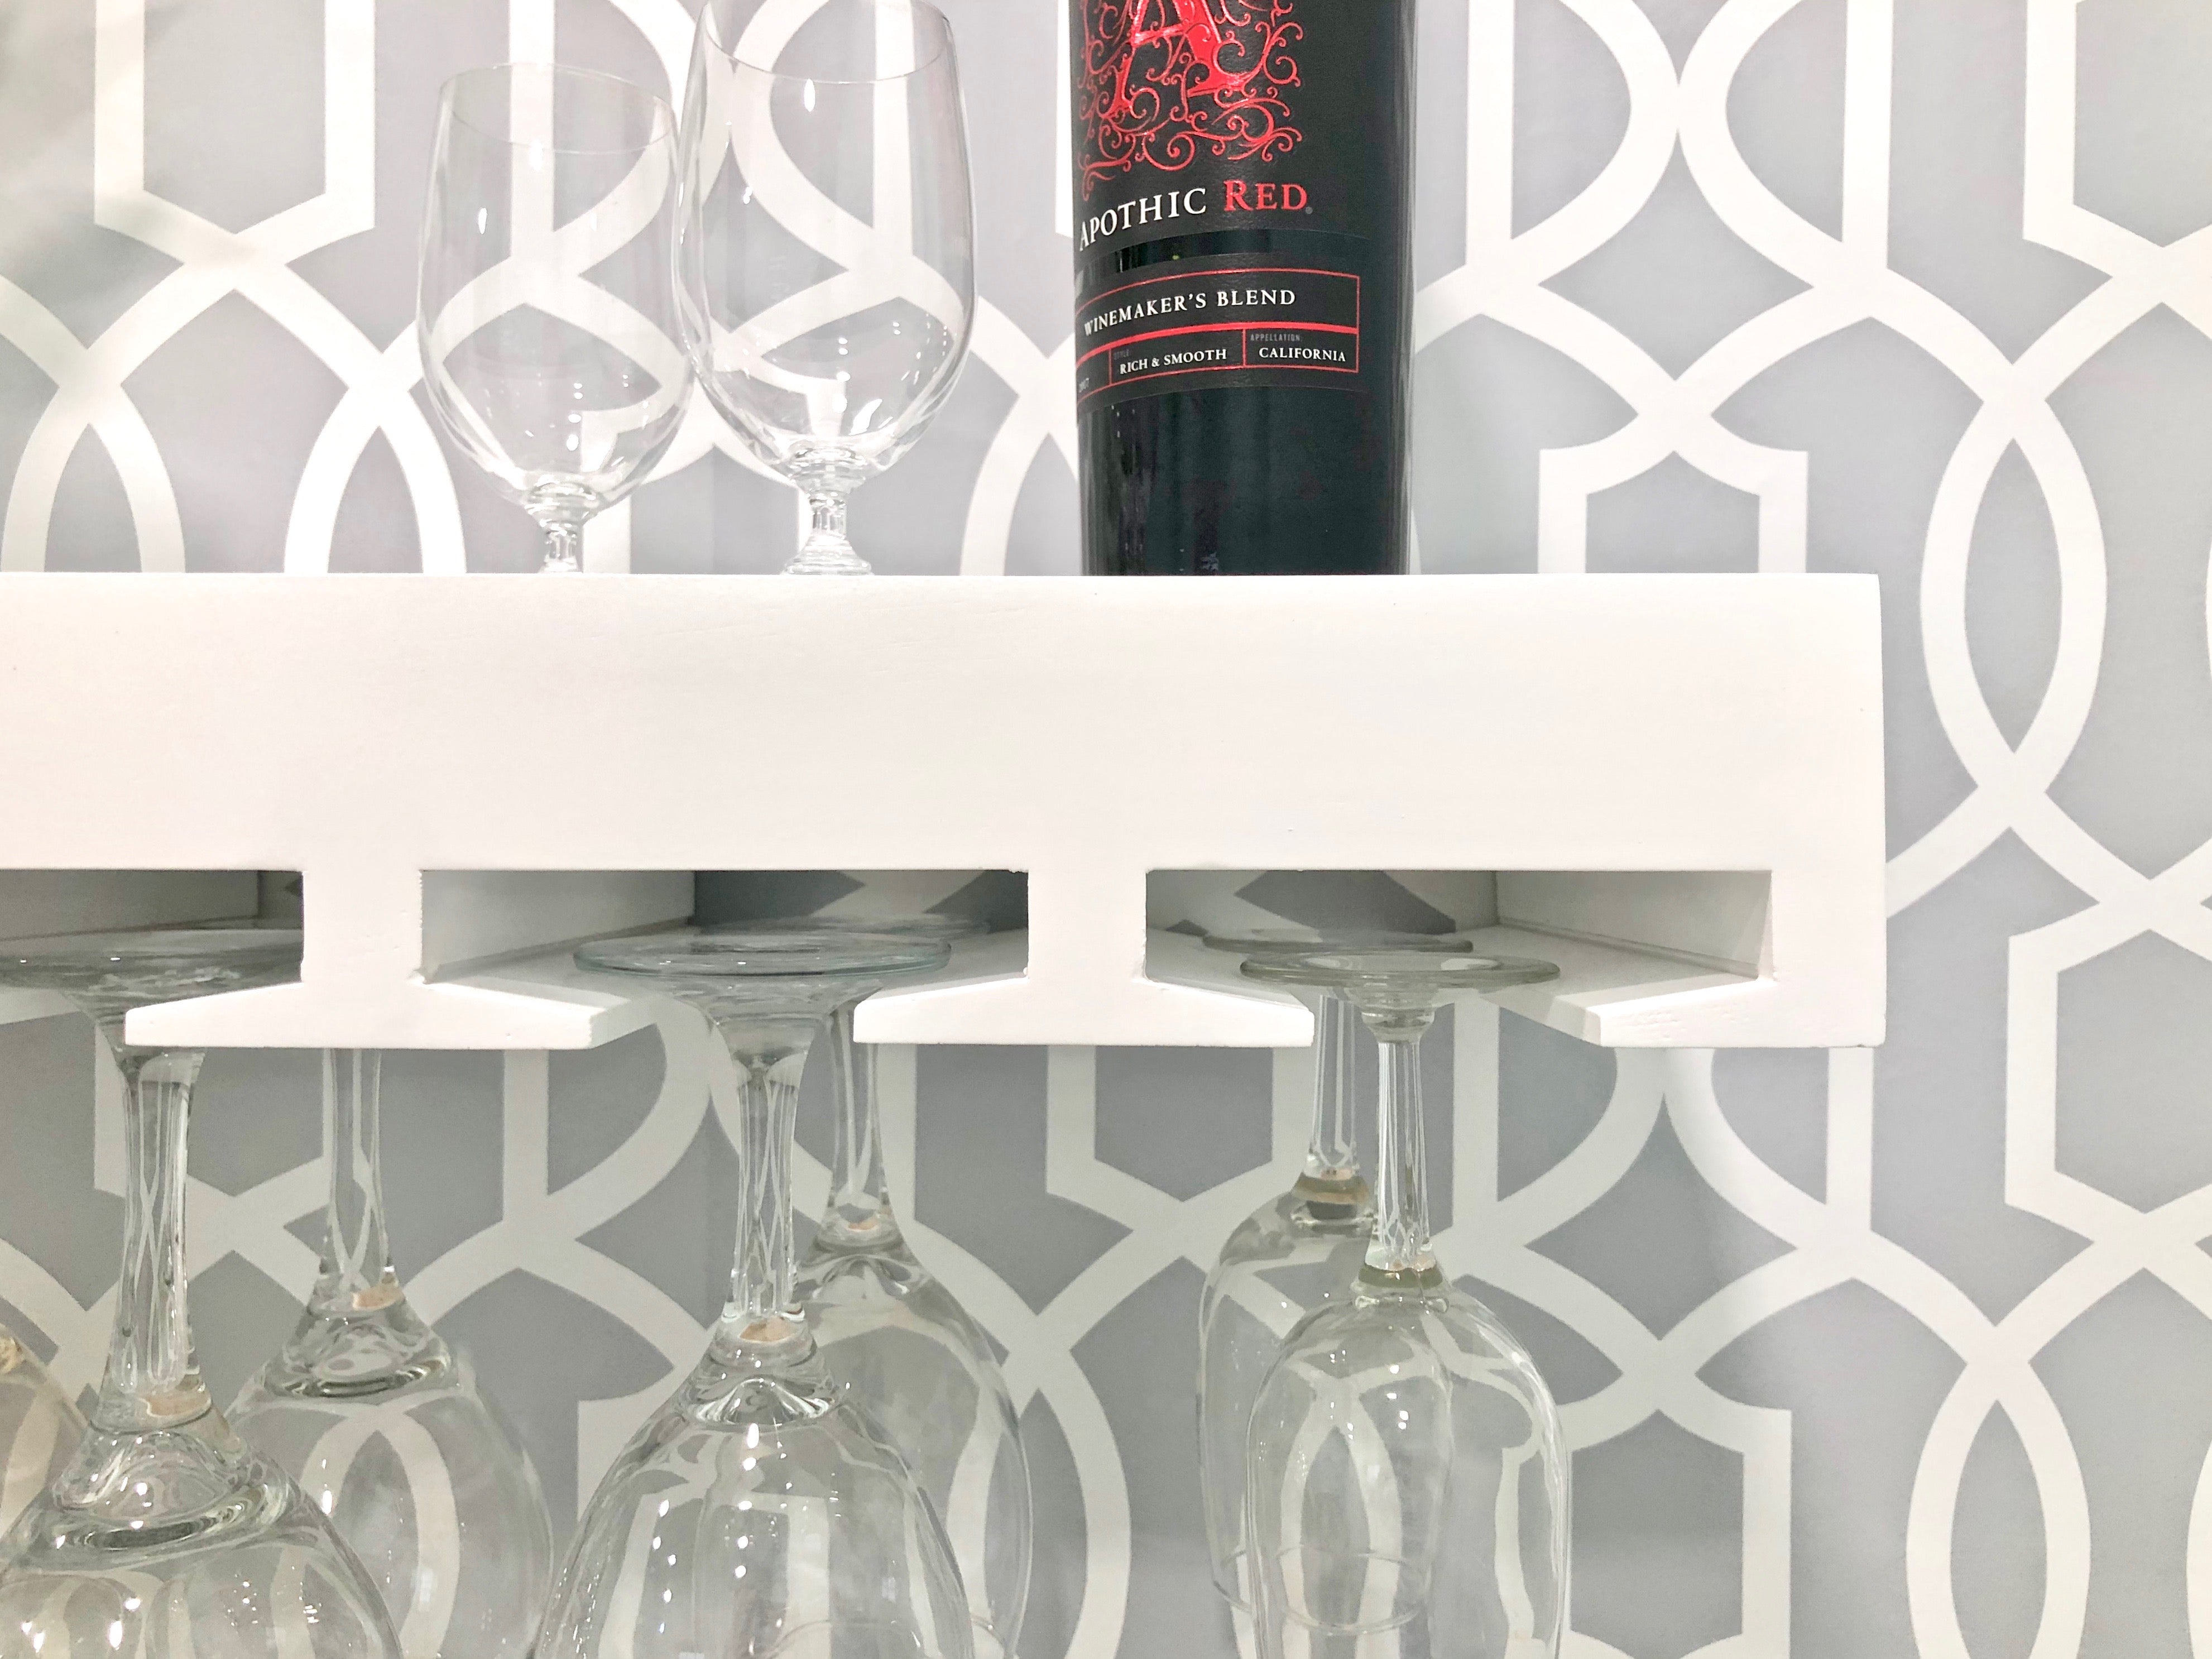 Oak Wine Glass Floating Shelf